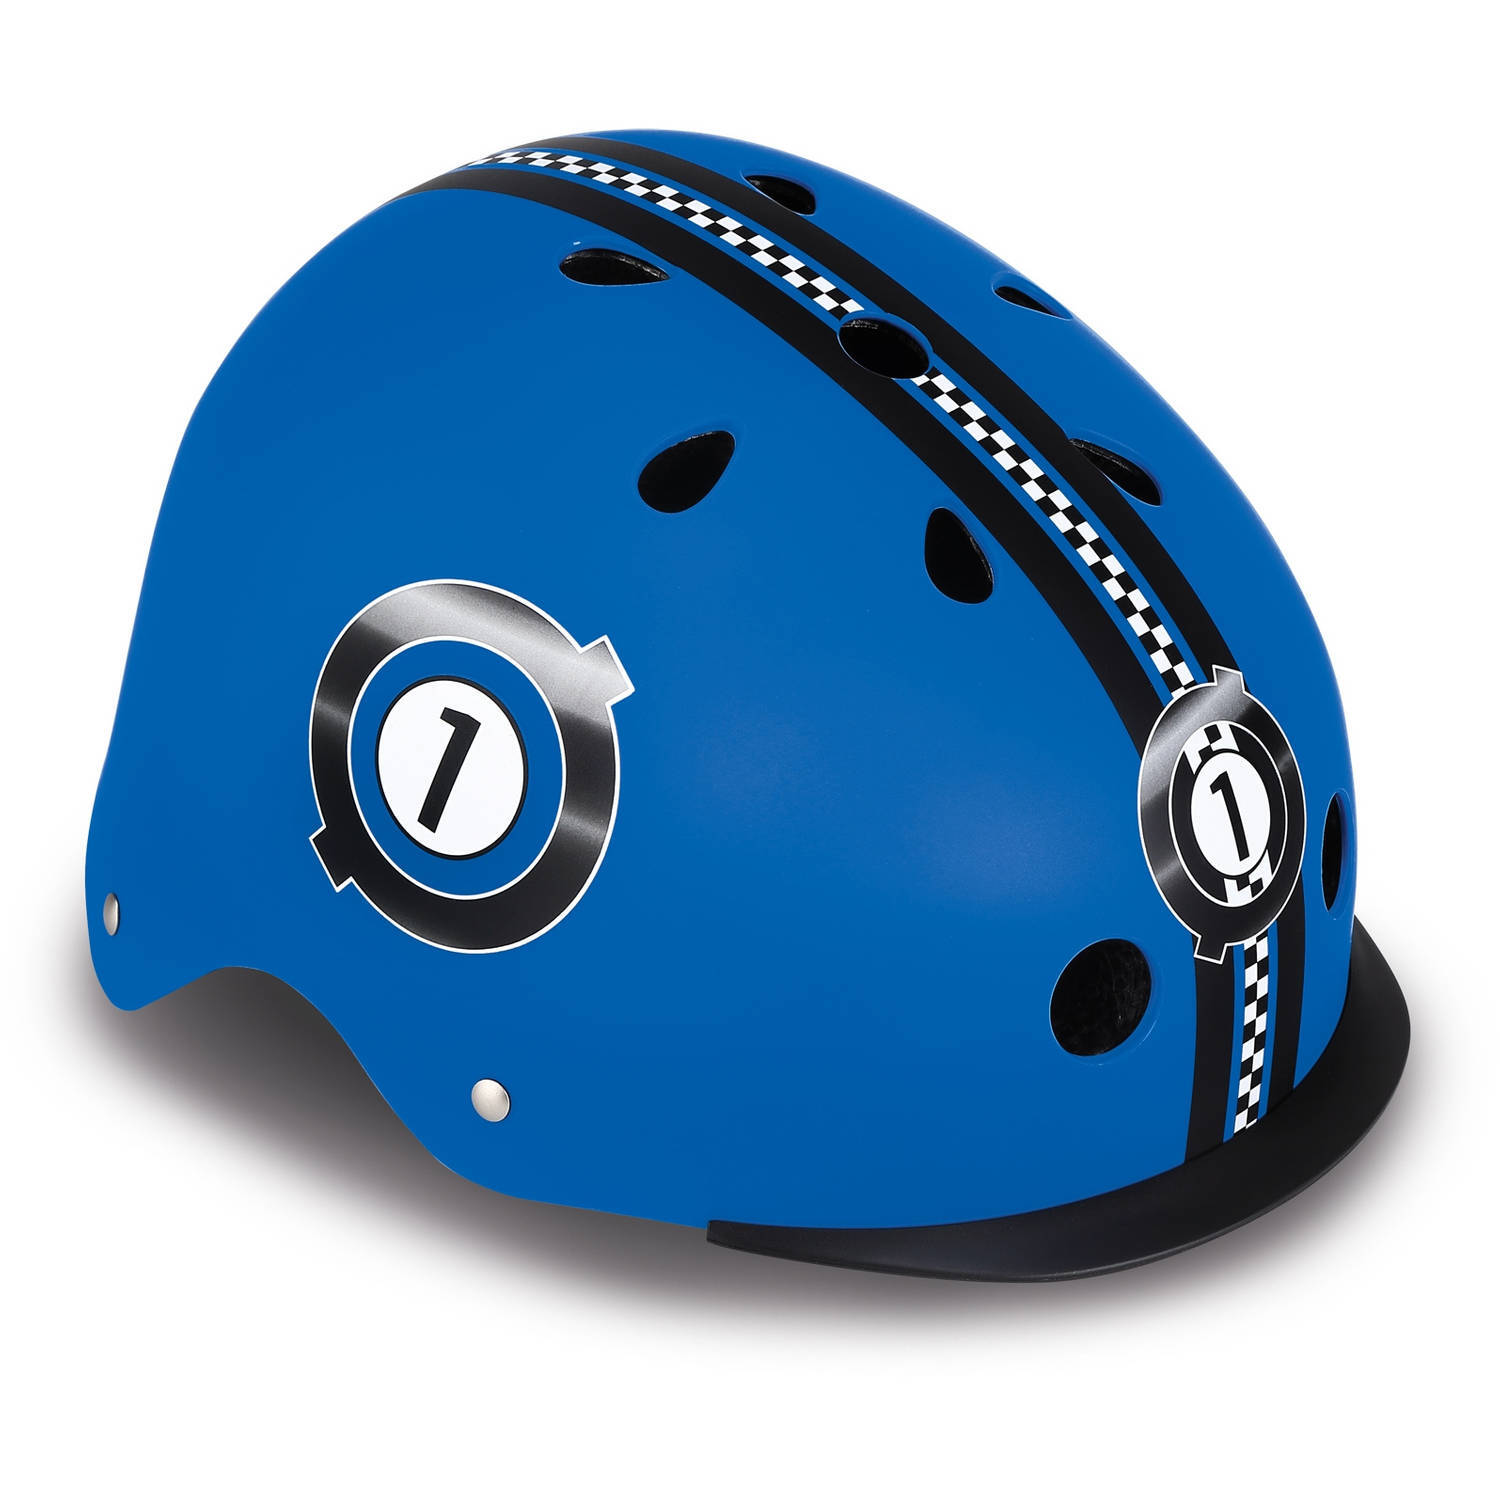 Globber helm elite lights maat 48/53 cm blauw